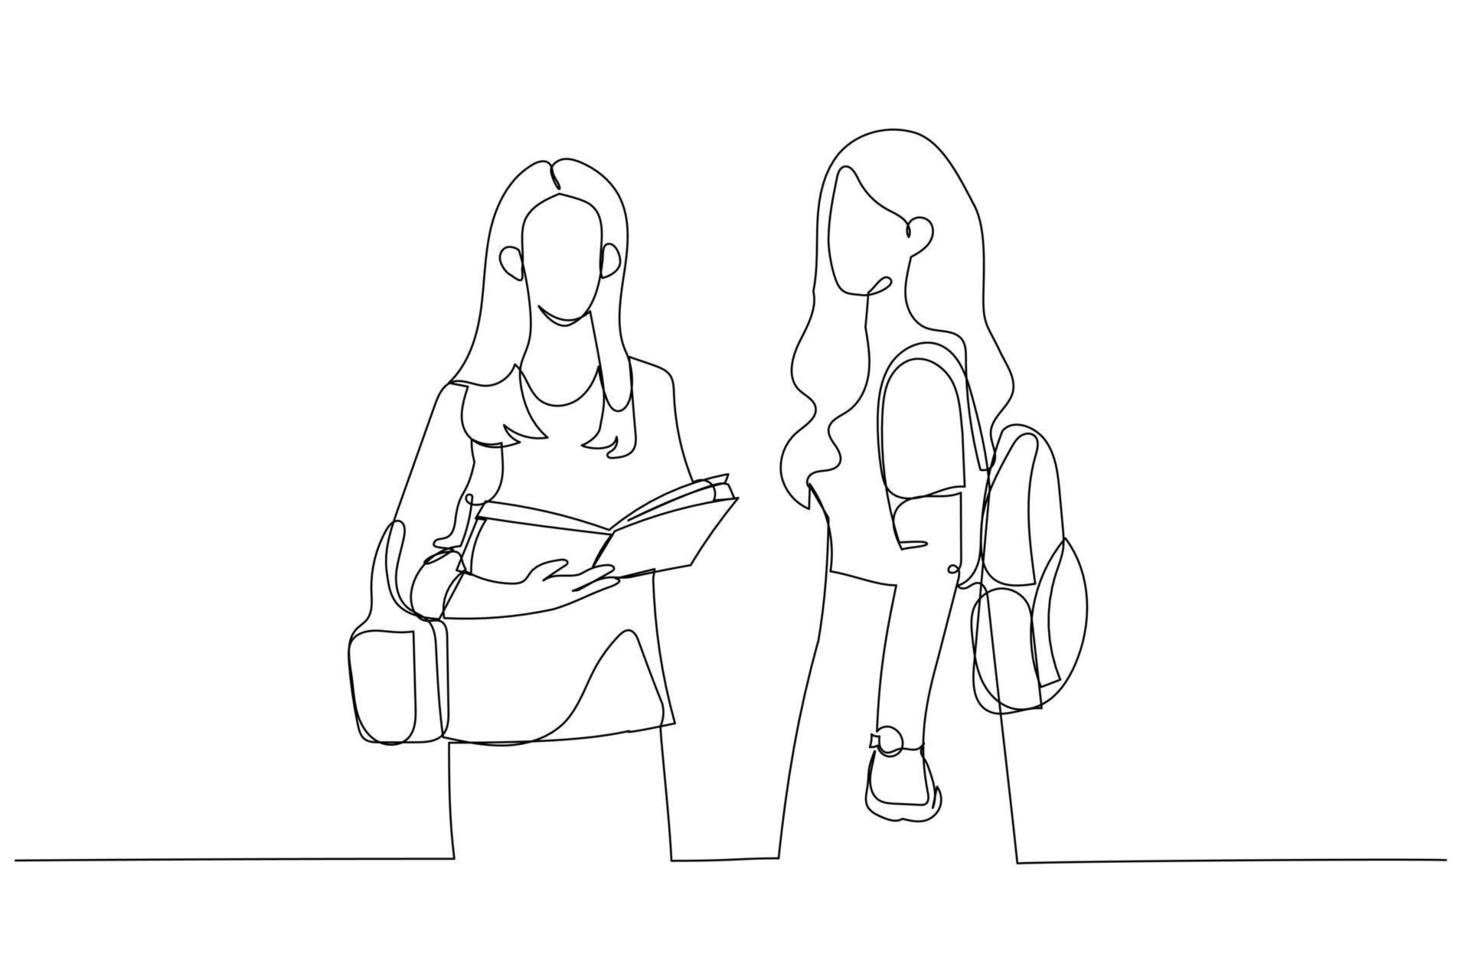 dibujo de dos chicas adolescentes reales en el aula que quieren estudiar en la universidad. estilo de arte de línea continua única vector